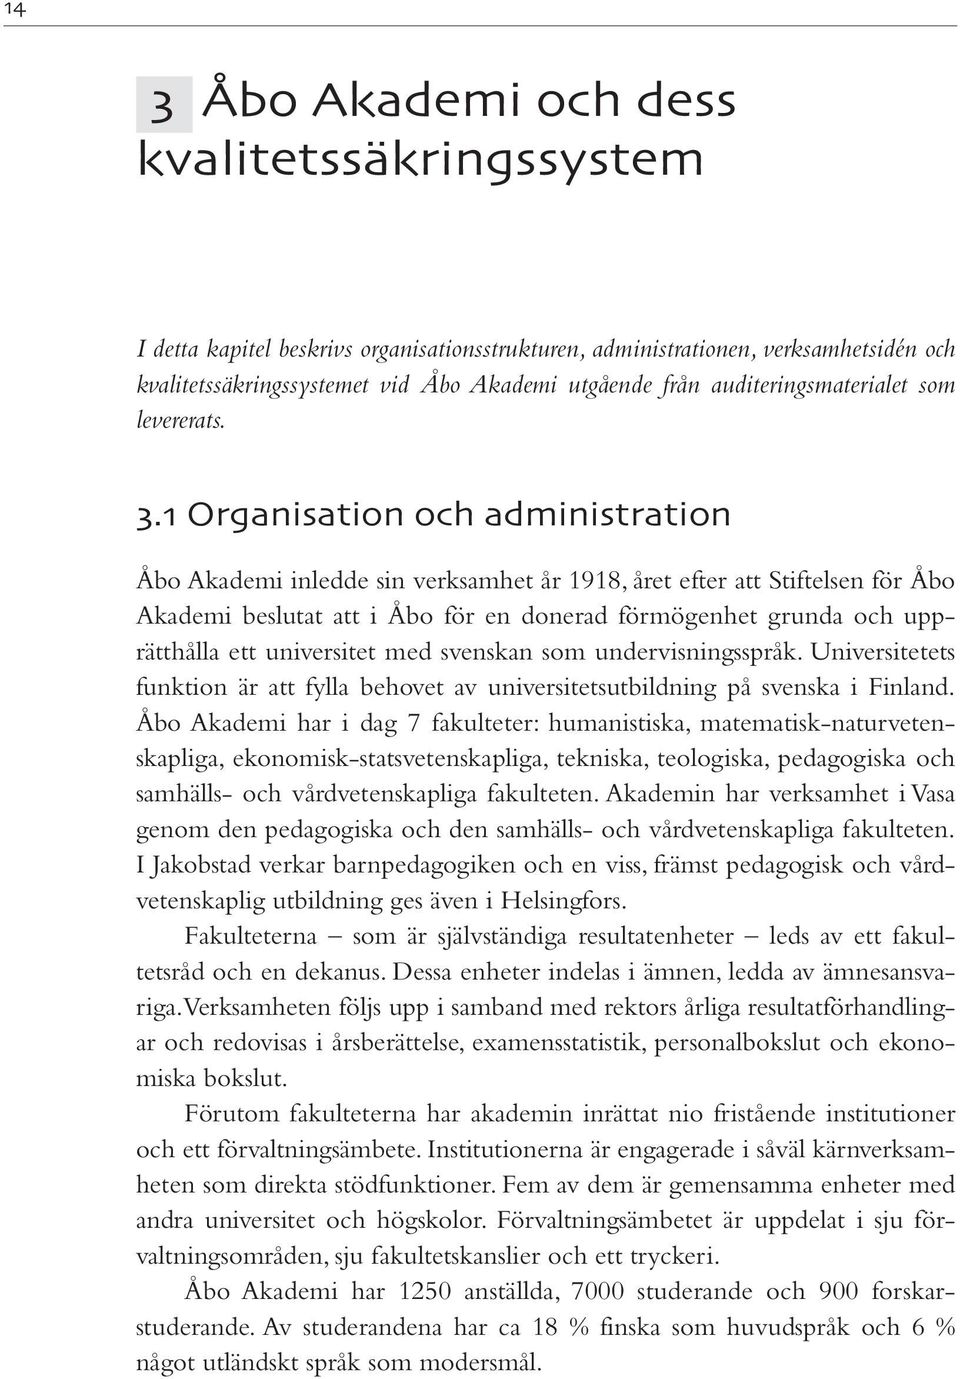 . Organisation och administration Åbo Akademi inledde sin verksamhet år 1918, året efter att Stiftelsen för Åbo Akademi beslutat att i Åbo för en donerad förmögenhet grunda och upprätthålla ett